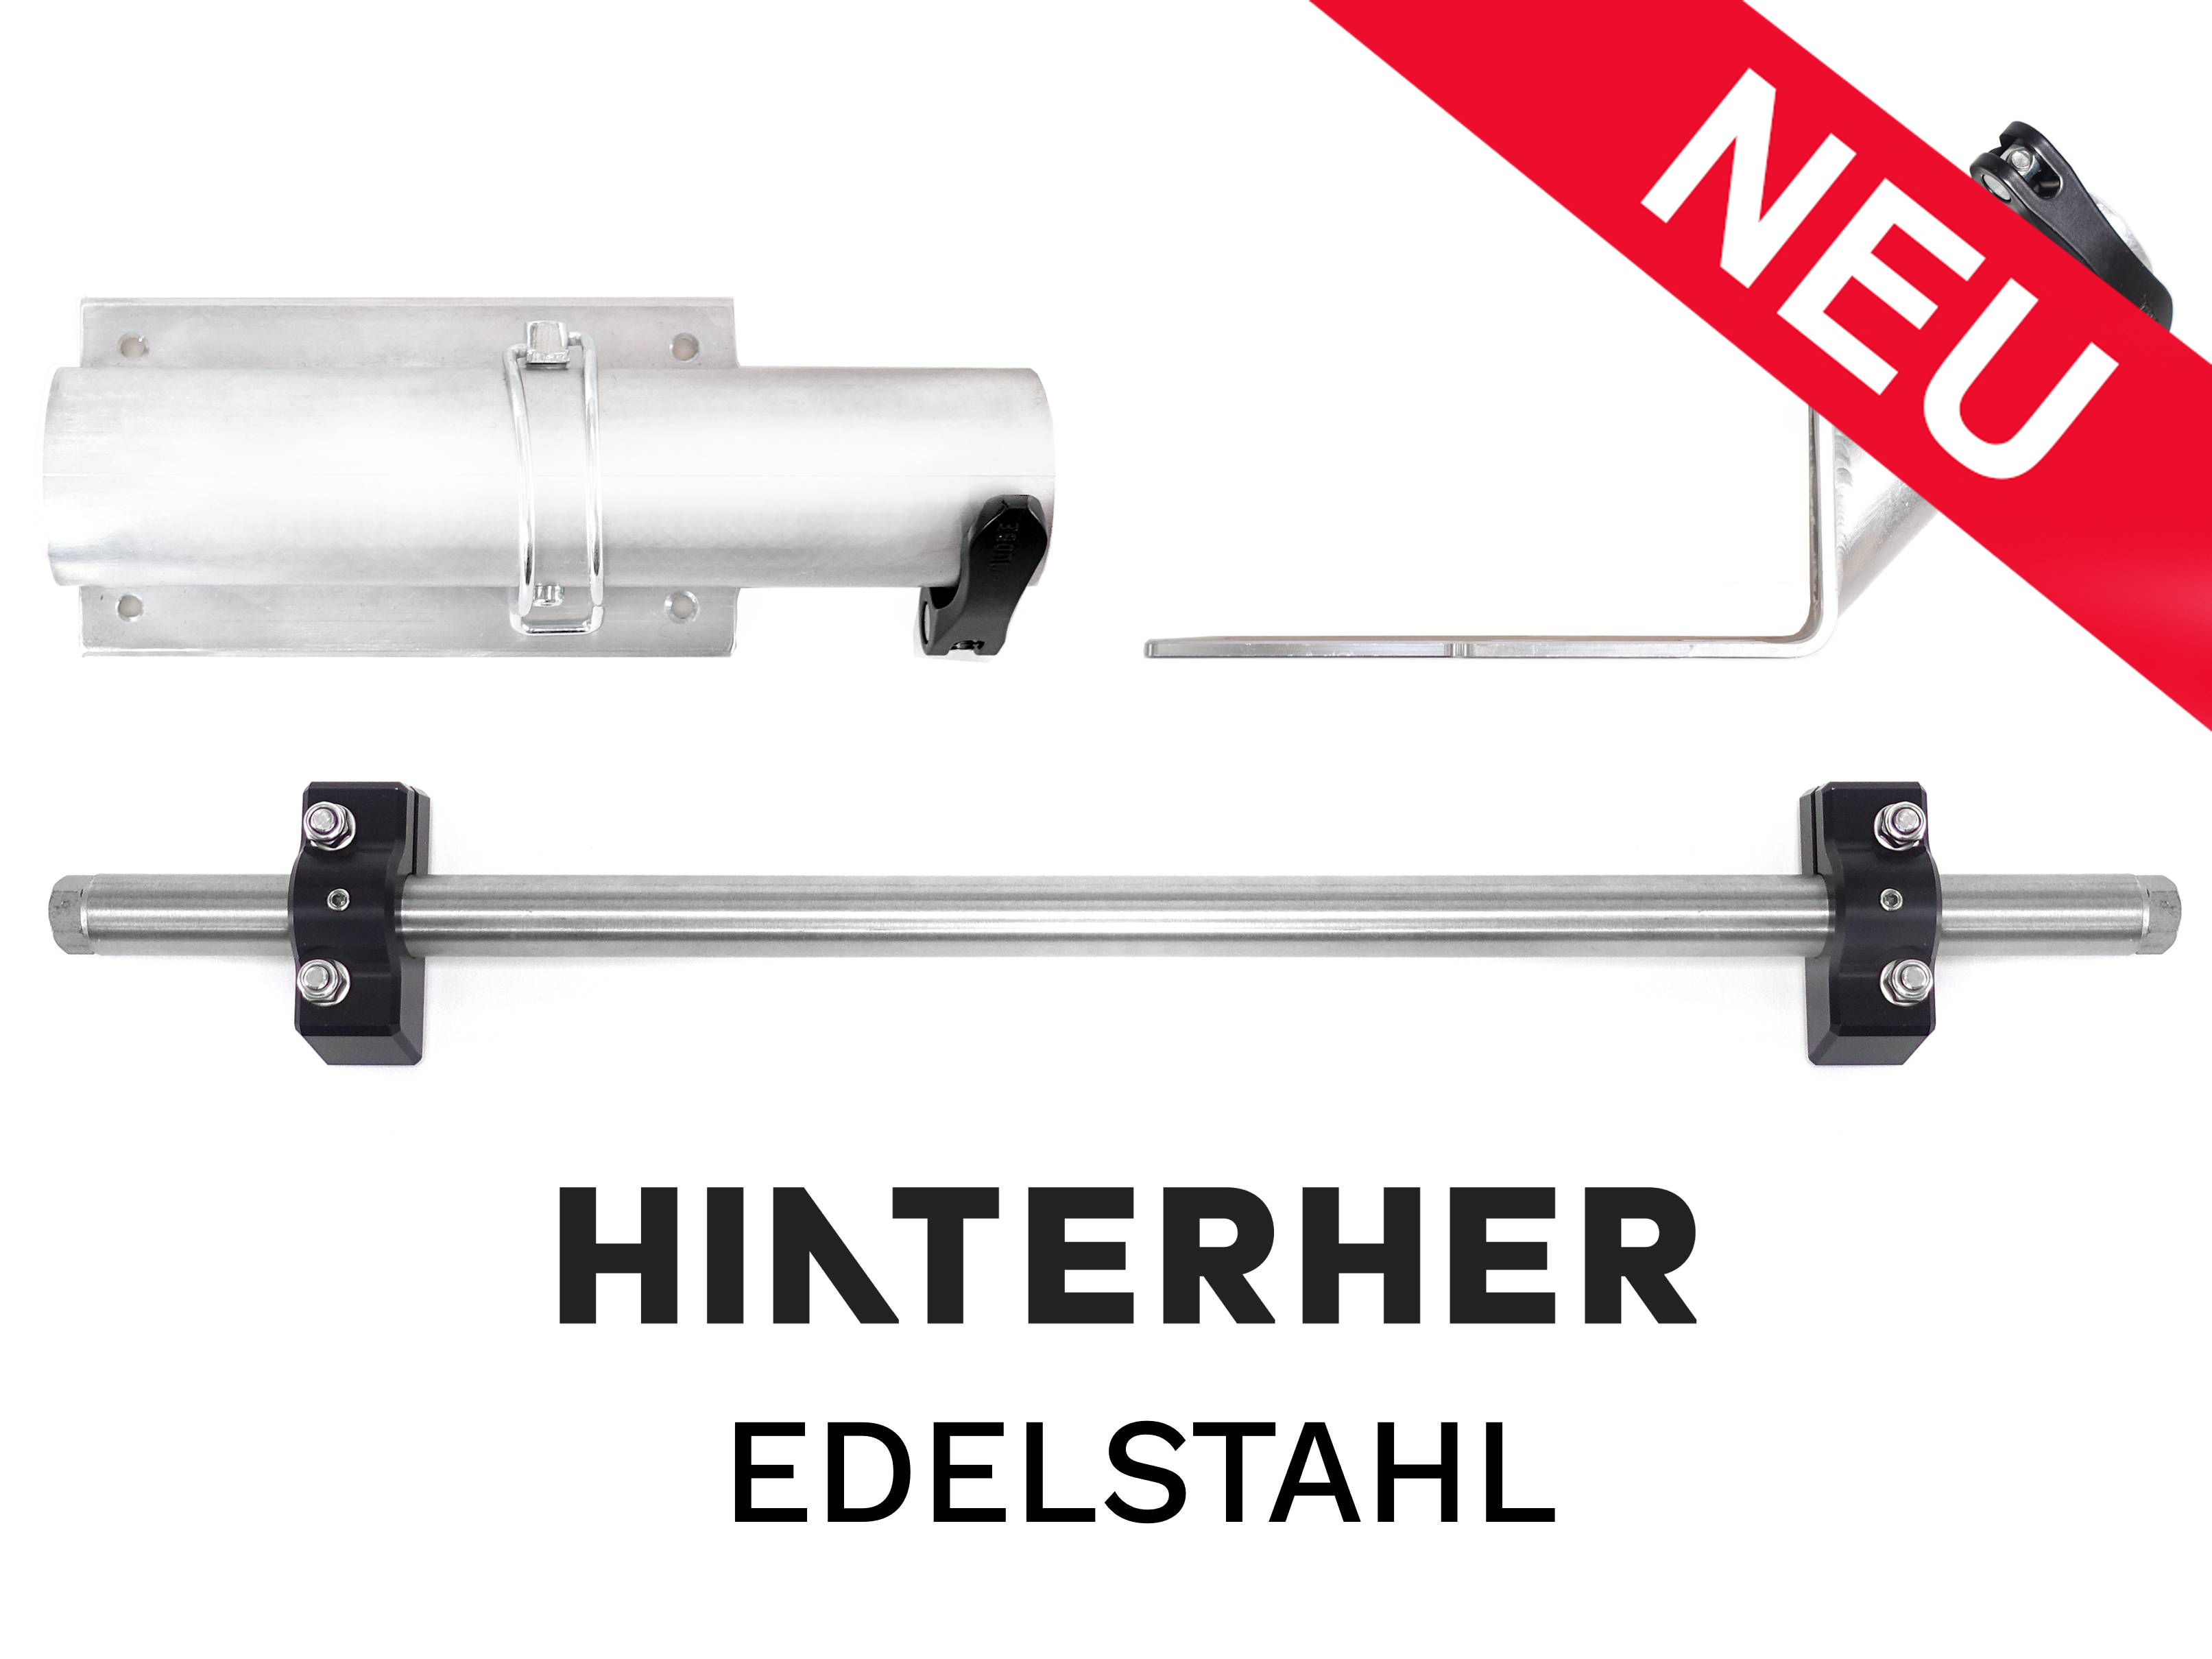 Upgrade SL-Edelstahl-Deichsel (Hinterher-Anschluss) inkl. Handwagenfunktion Hxxl